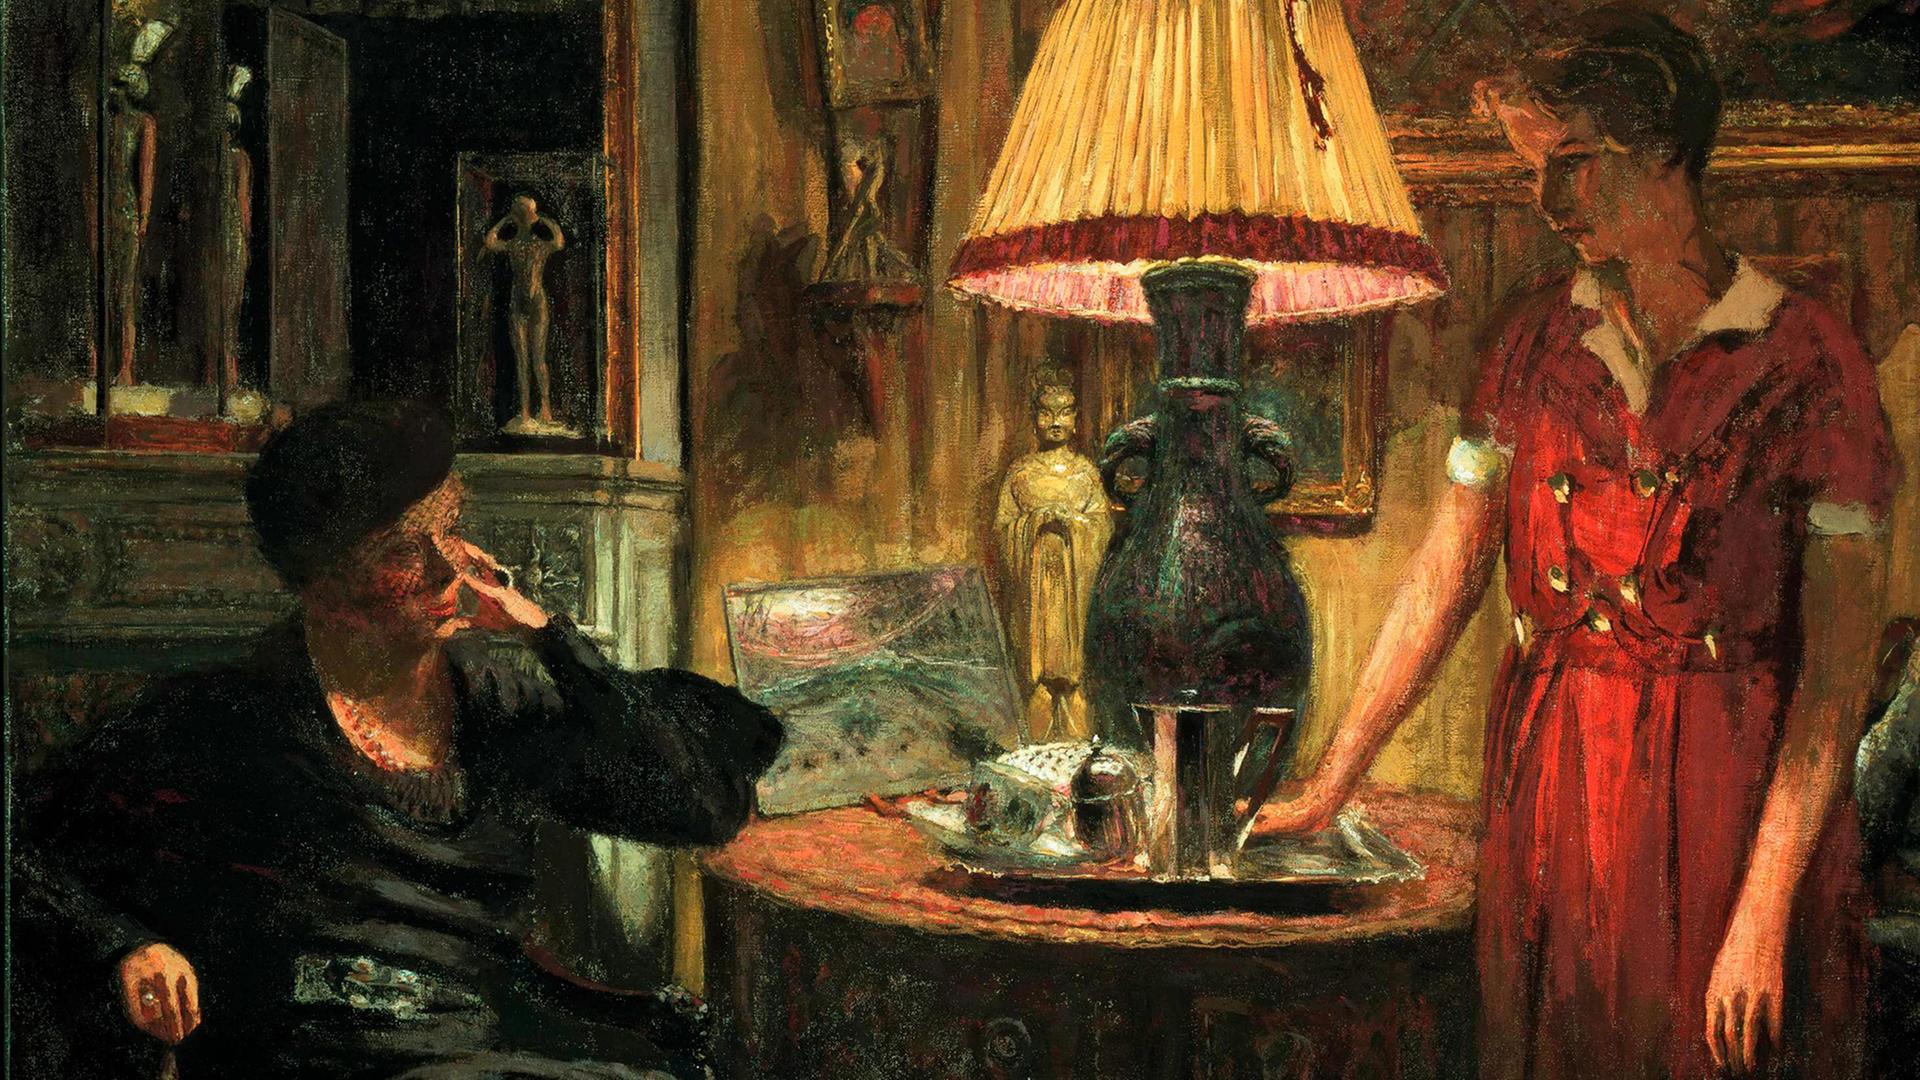 Gemälde "Der Besuch" von Vuillard, Edouard (1868-1940)